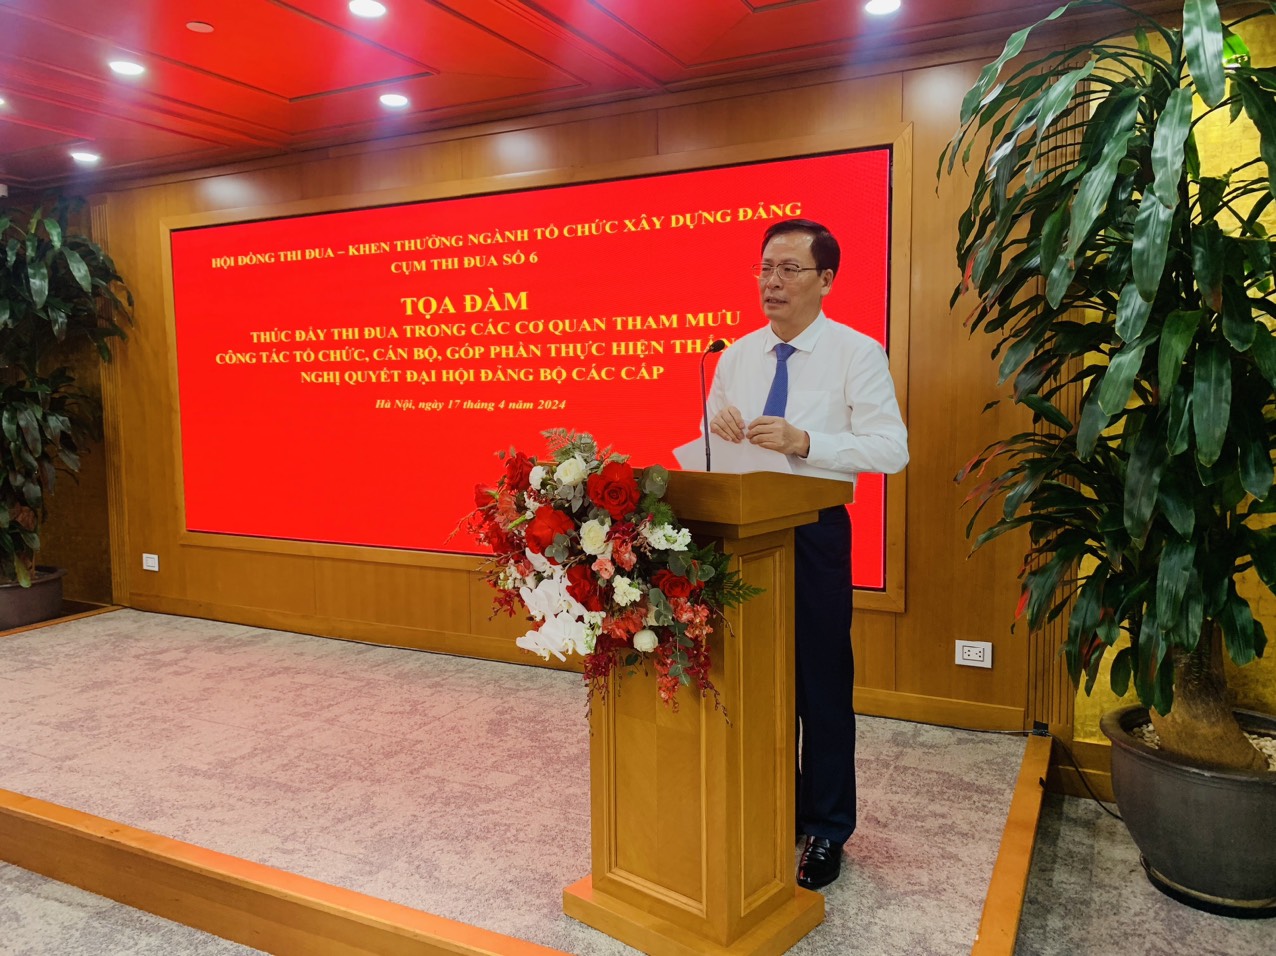 Trưởng Ban Tổ chức Đảng ủy Khối Doanh nghiệp Trung ương, Cụm trưởng Cụm thi đua số 6 - Ngành Tổ chức xây dựng Đảng năm 2023 báo cáo Đề dẫn.